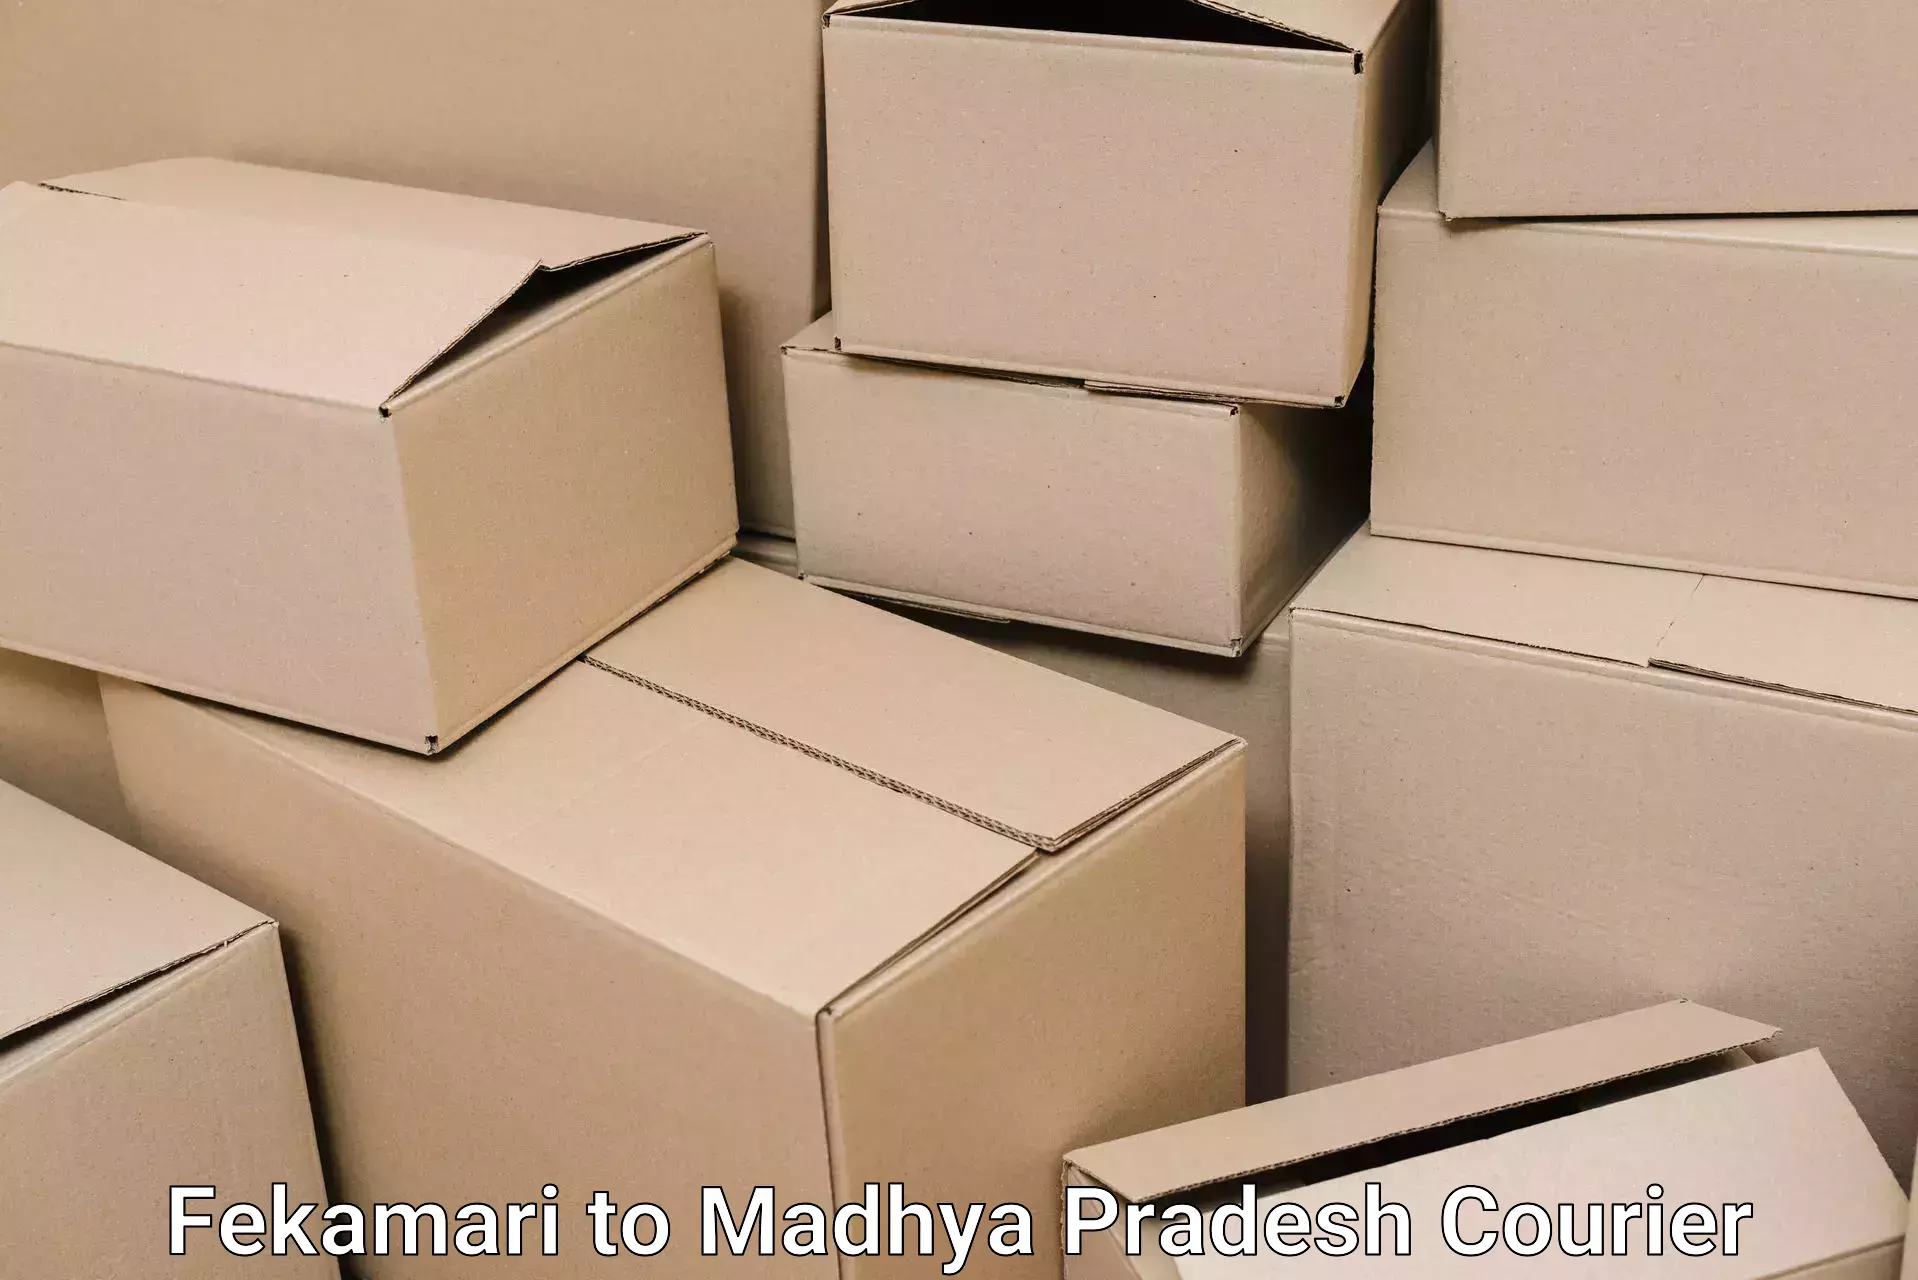 Professional moving strategies Fekamari to Nainpur